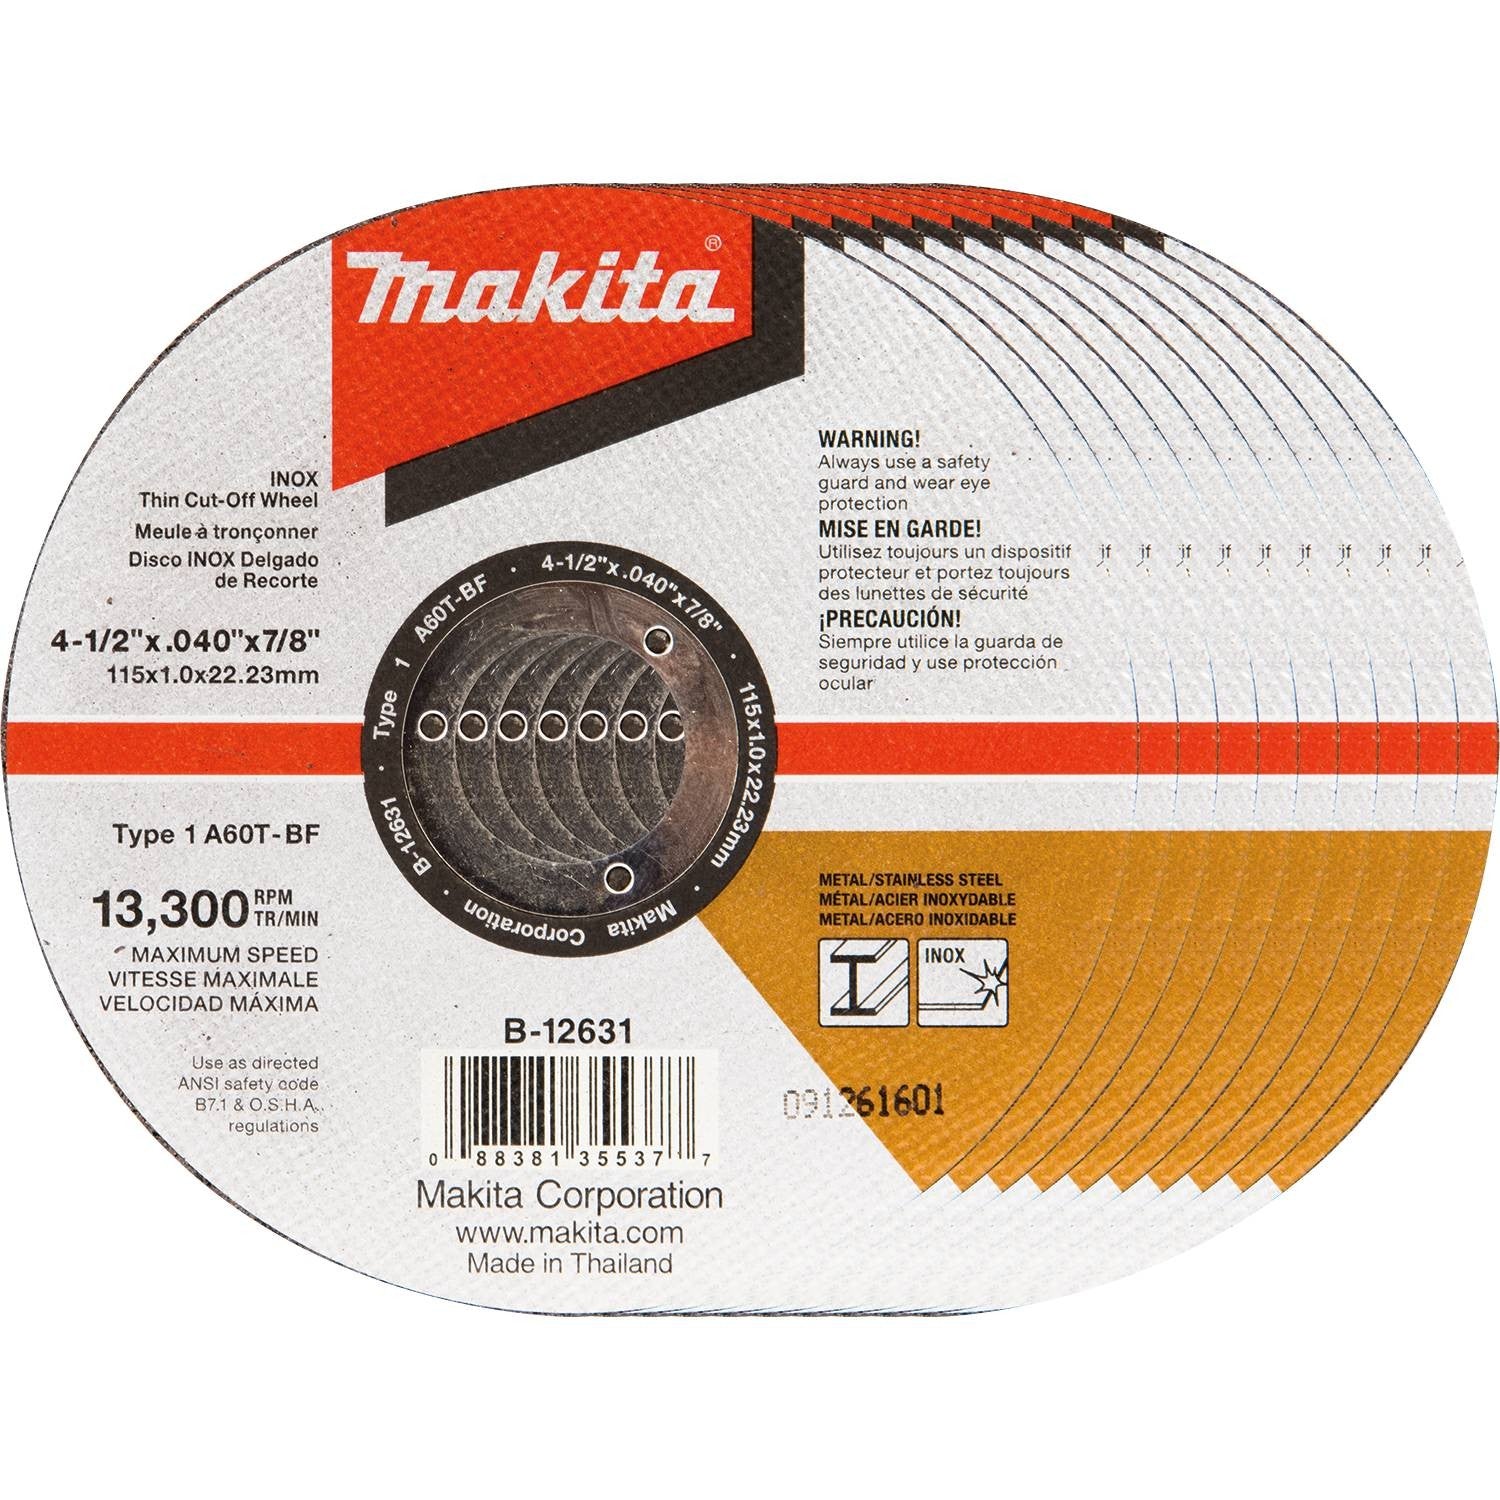 Makita B-12631-10 4-1/2" x .040" x 7/8" Thin INOX Cut-Off Wheel 10 Pack